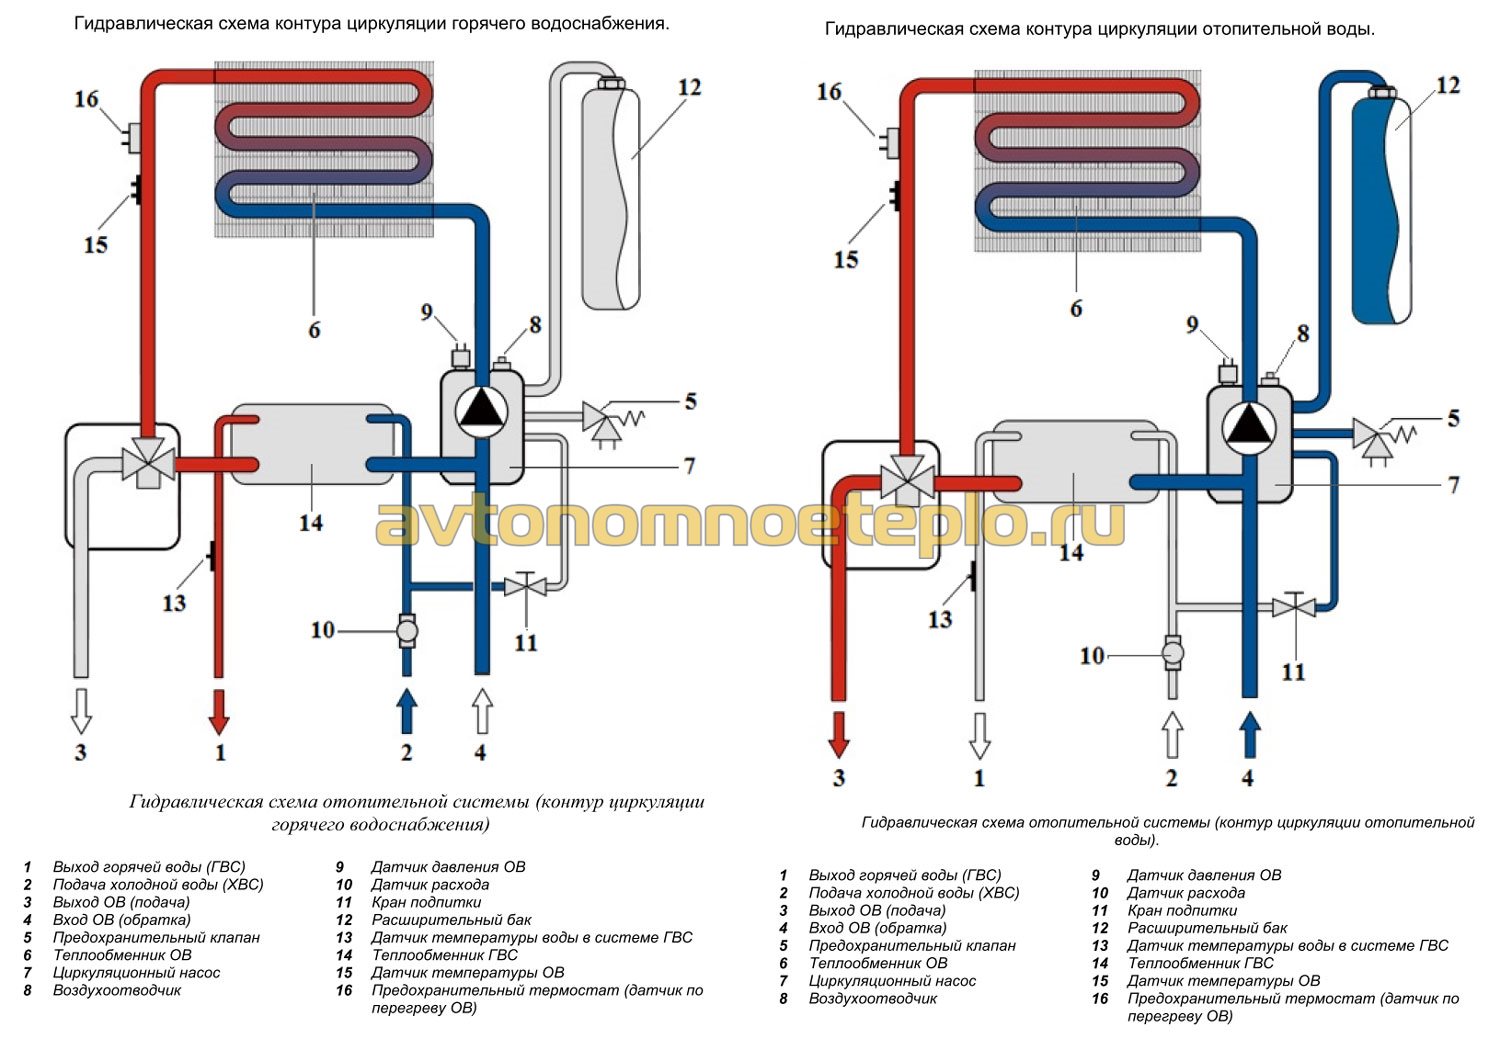 гидравлическая схема контура отопления и ГВС